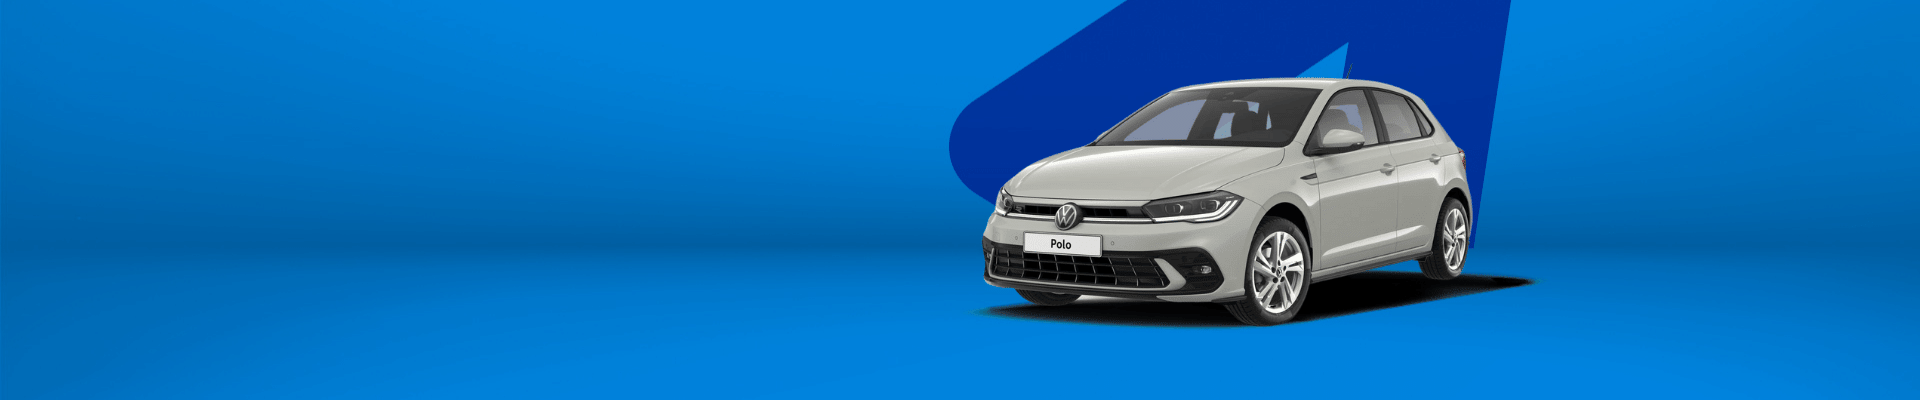 Volkswagen Polo Private Lease